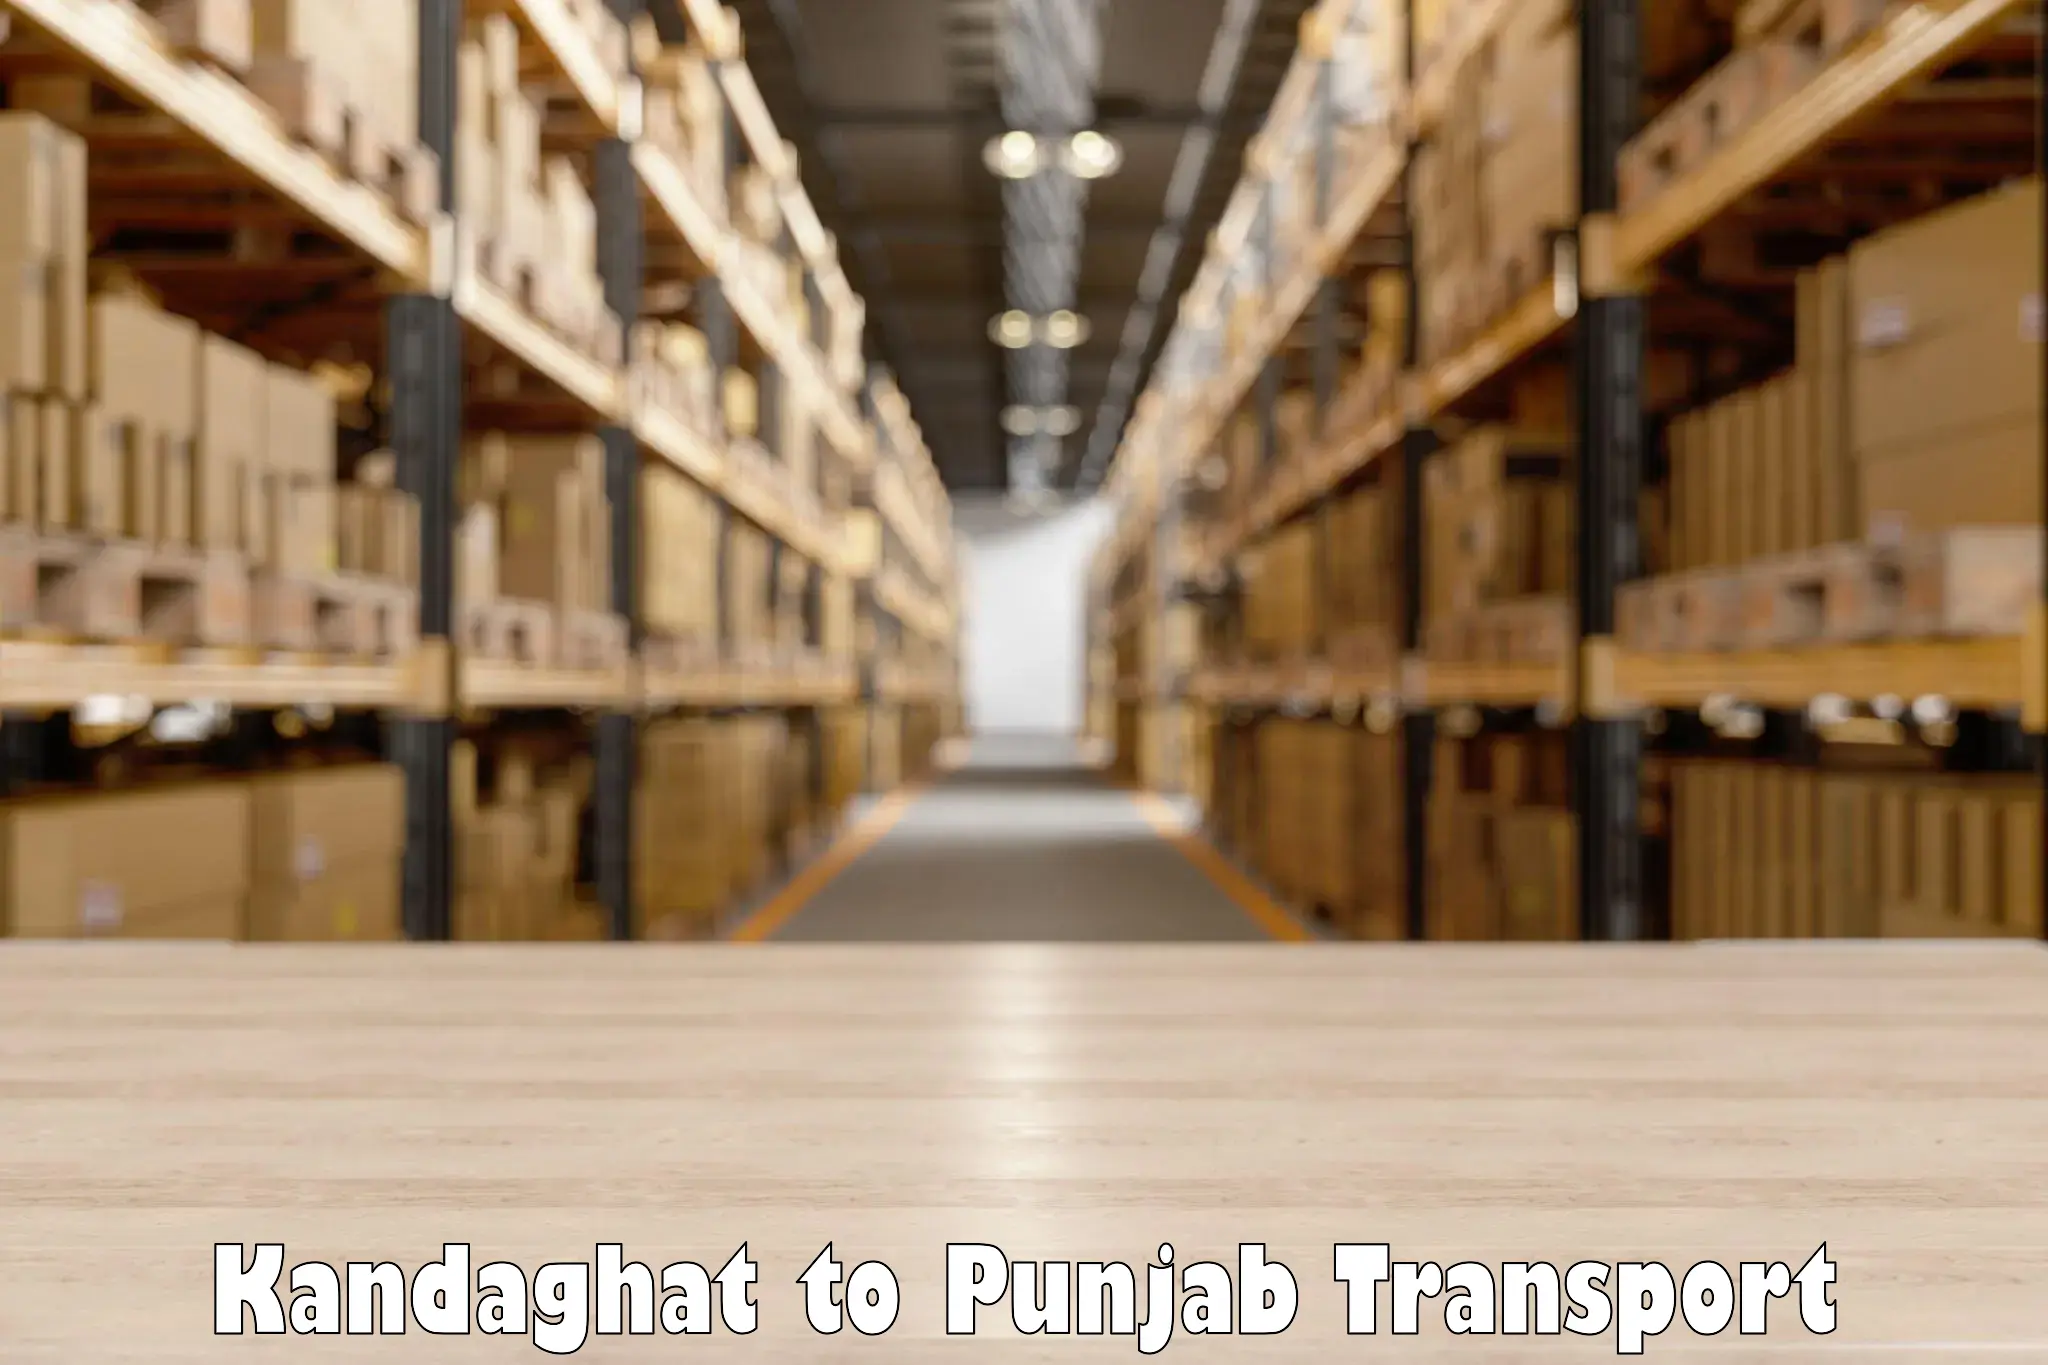 Interstate transport services Kandaghat to Jalandhar